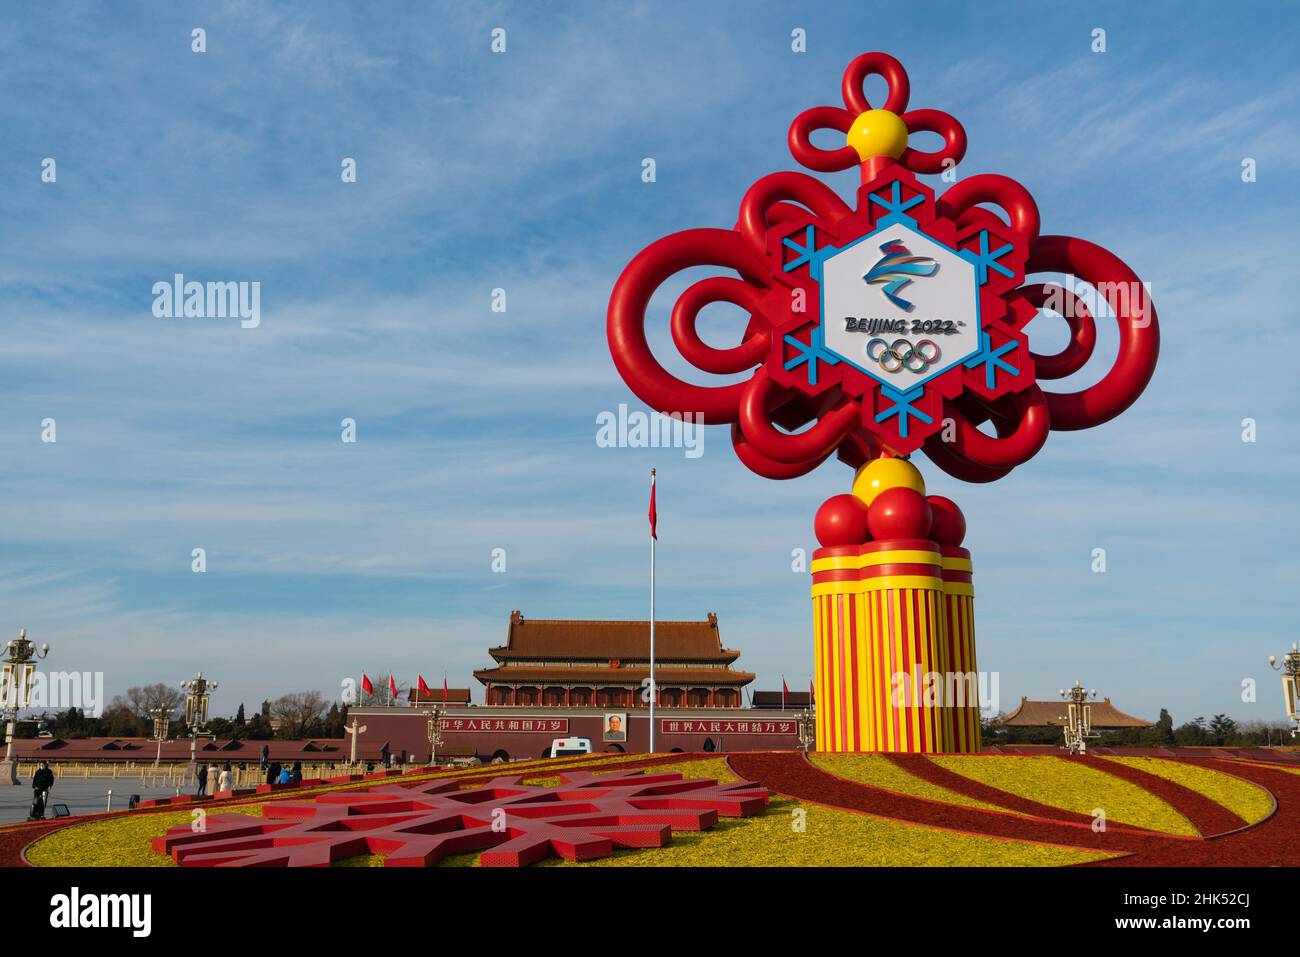 Beijing, Chine - 28 janvier 2022: Noeud chinois, stand décoratif pour la promotion des Jeux Olympiques d'hiver de Beijing 2022 sur la place Tian'anmen, Beijing Banque D'Images